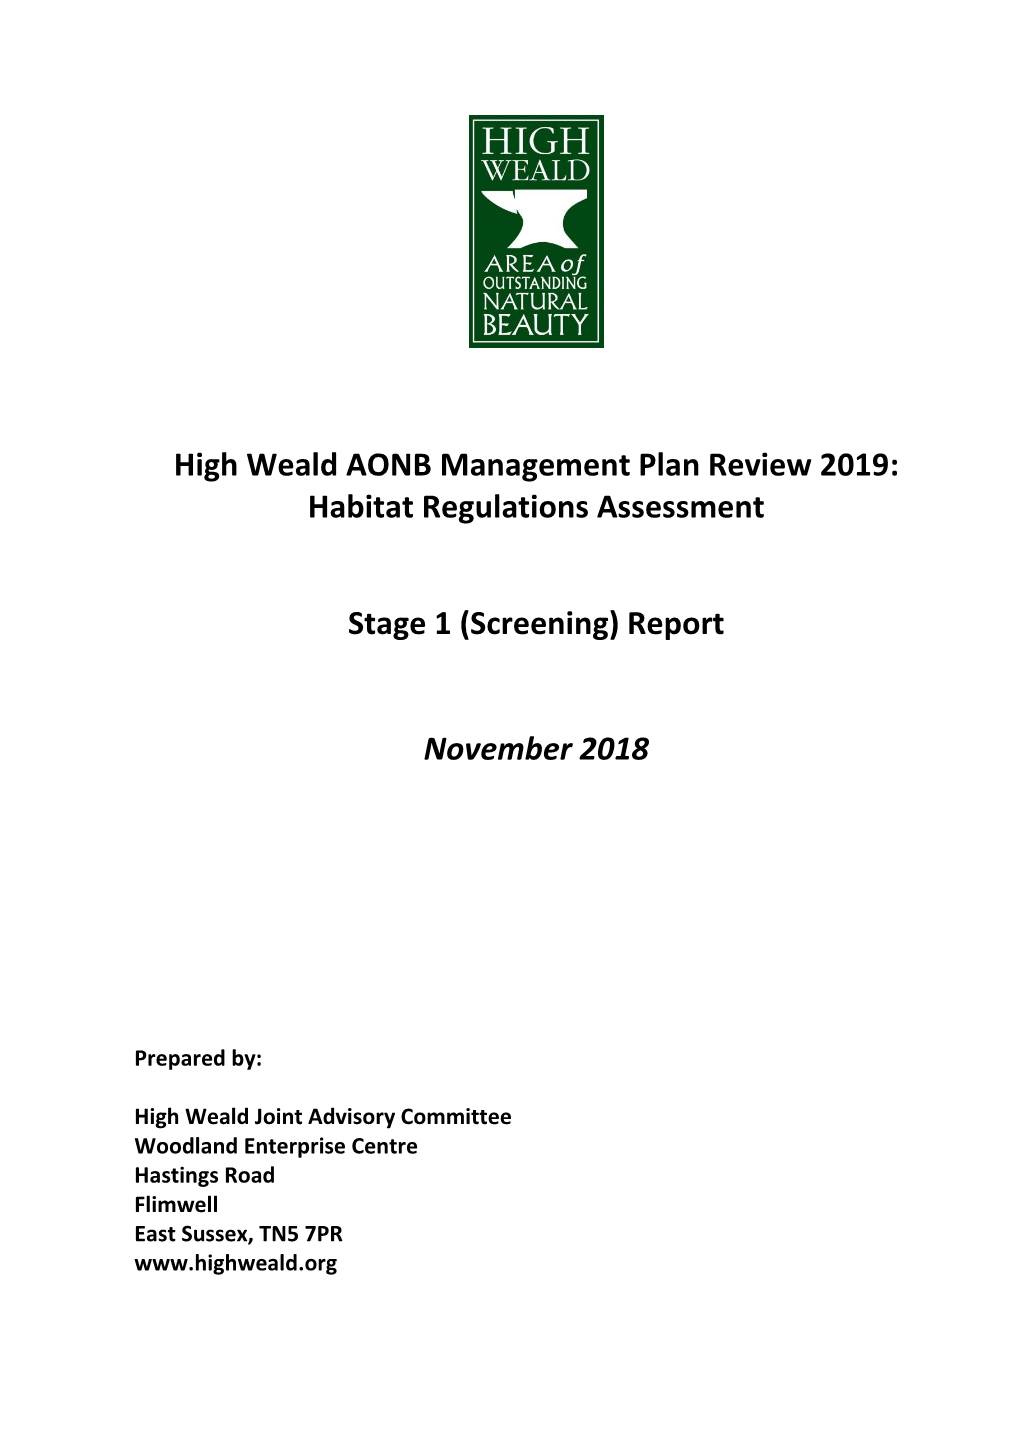 High Weald AONB Management Plan Review 2019: Habitat Regulations Assessment